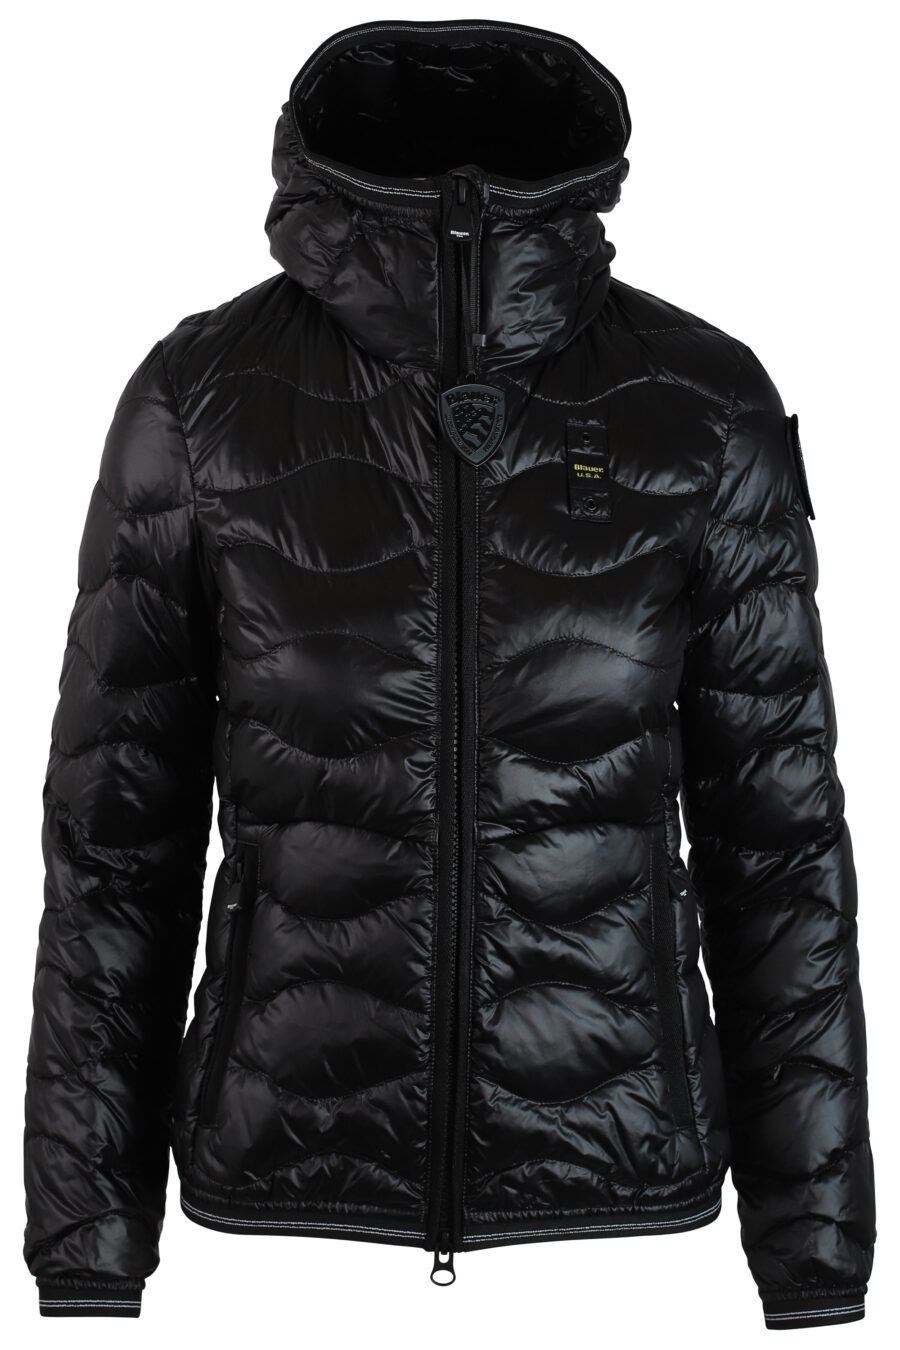 Veste noire avec capuche et lignes ondulées avec patch latéral - IMG 0223